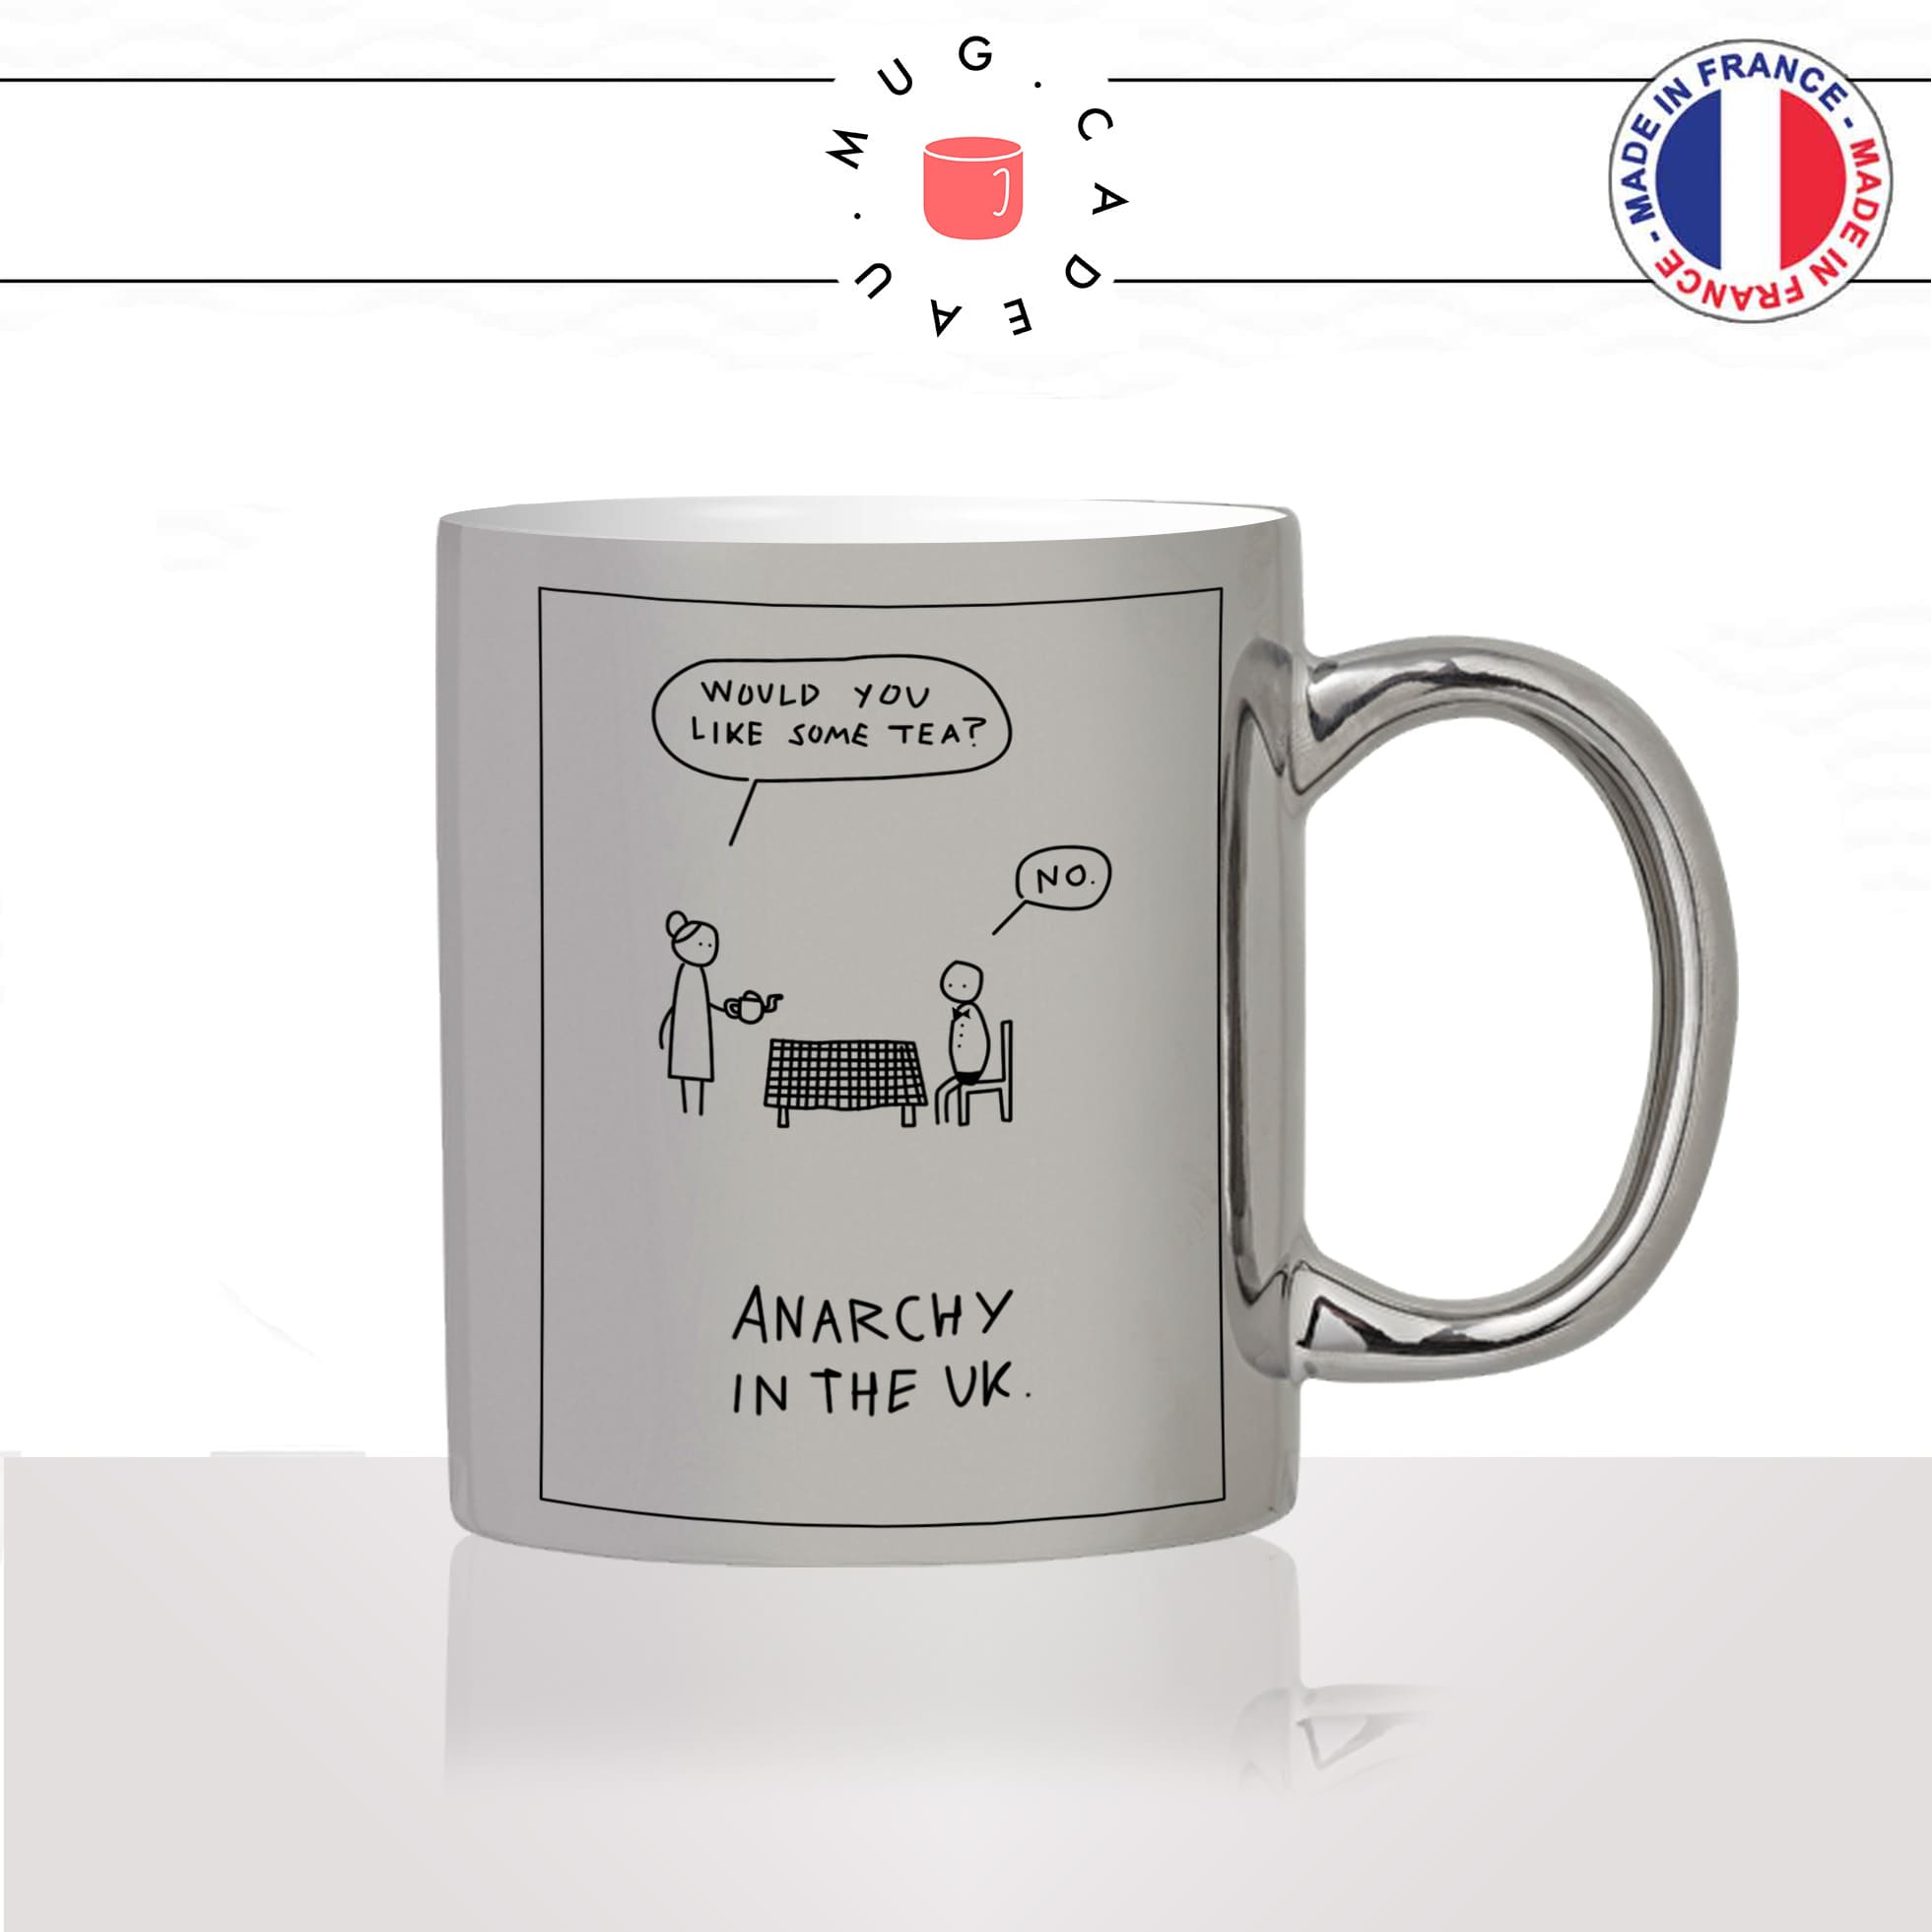 mug-tasse-argent-argenté-silver-tea-time-anarchy-in-the-uk-anglais-blague-dessin-original-humour-idée-cadeau-fun-cool-café-thé2